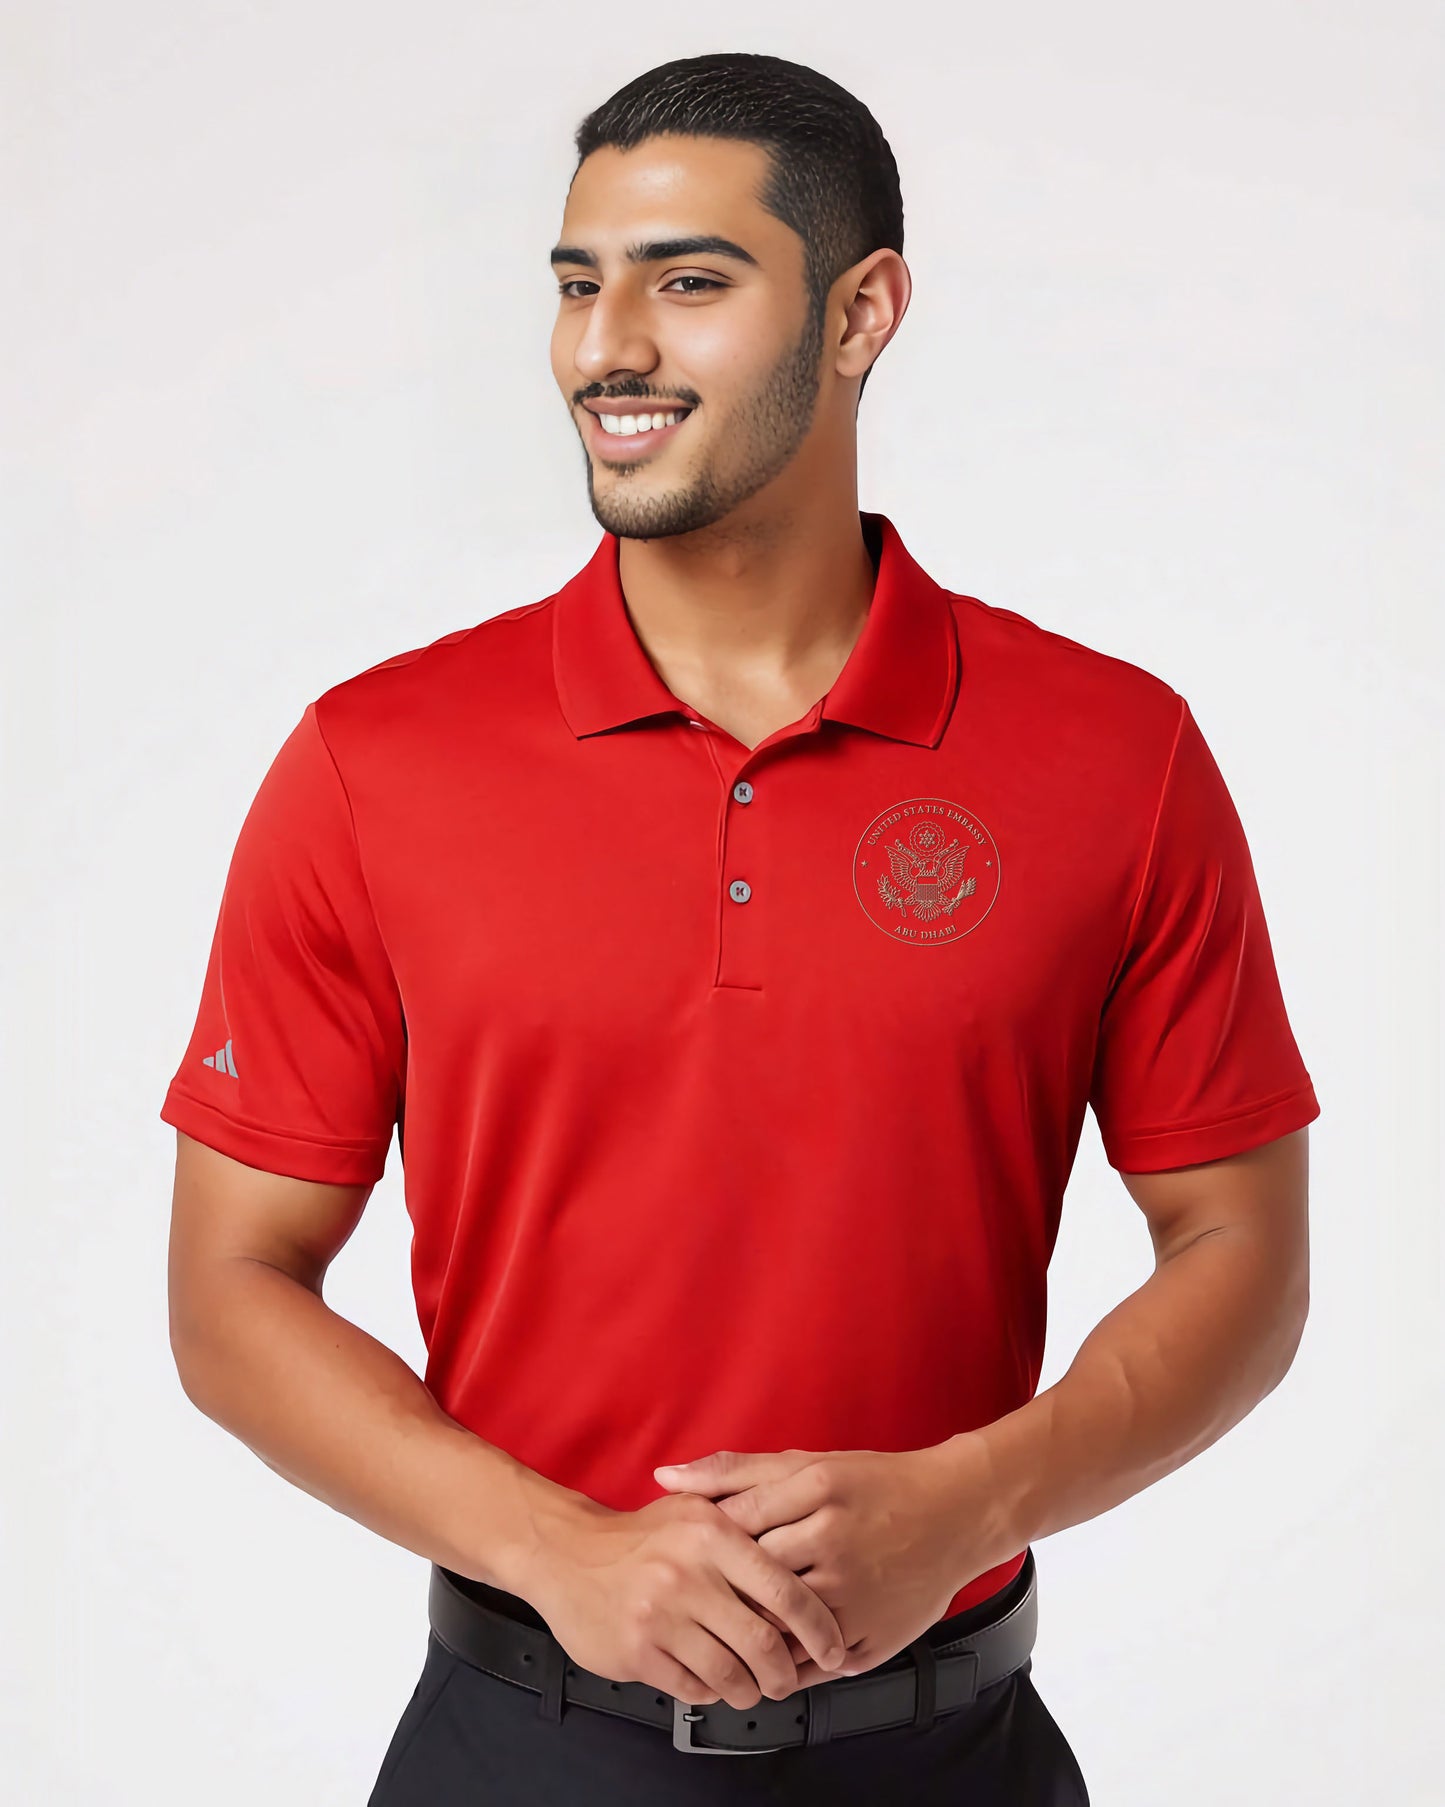 Adidas® Embroidered Polo, Gold Seal: Abu Dhabi